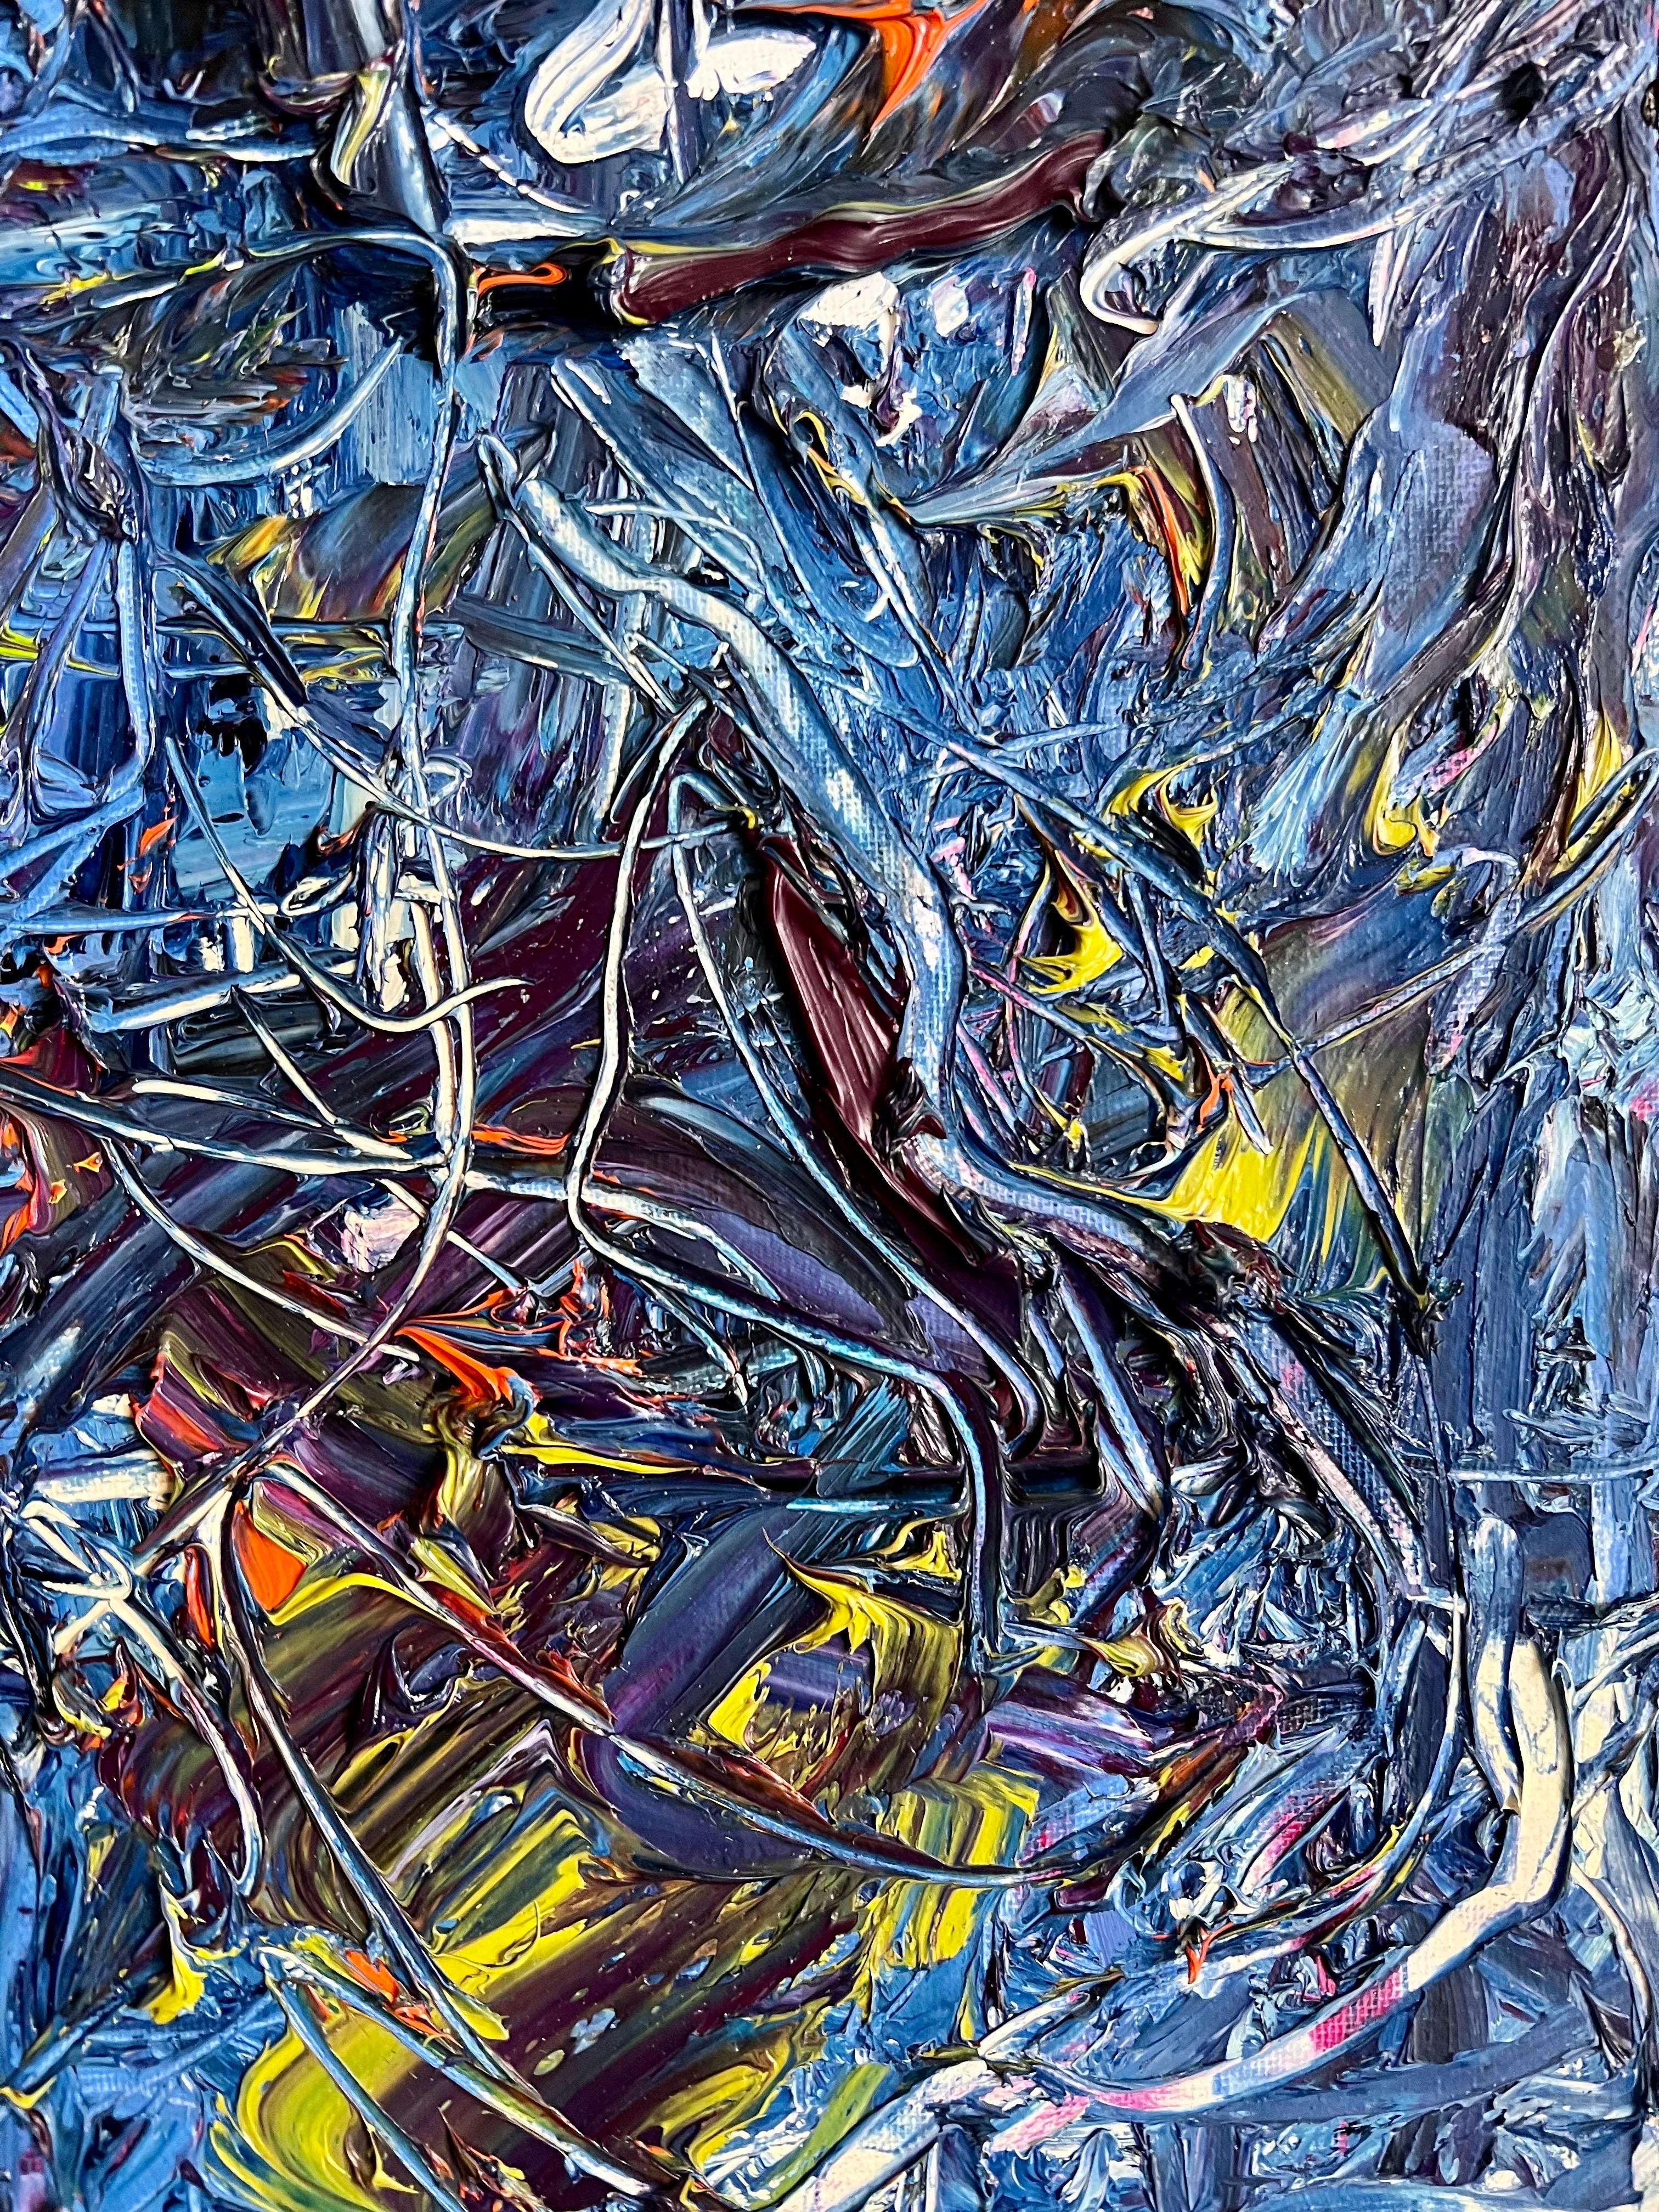 Peinture expressionniste abstraite de Norman Liebman présentant des coups de peinture à l'huile audacieux et texturés dans les bleus, les jaunes et les rouges. Signé au dos.

Norman Liebman : Peintre expressionniste abstrait
Norman Liebman, né en